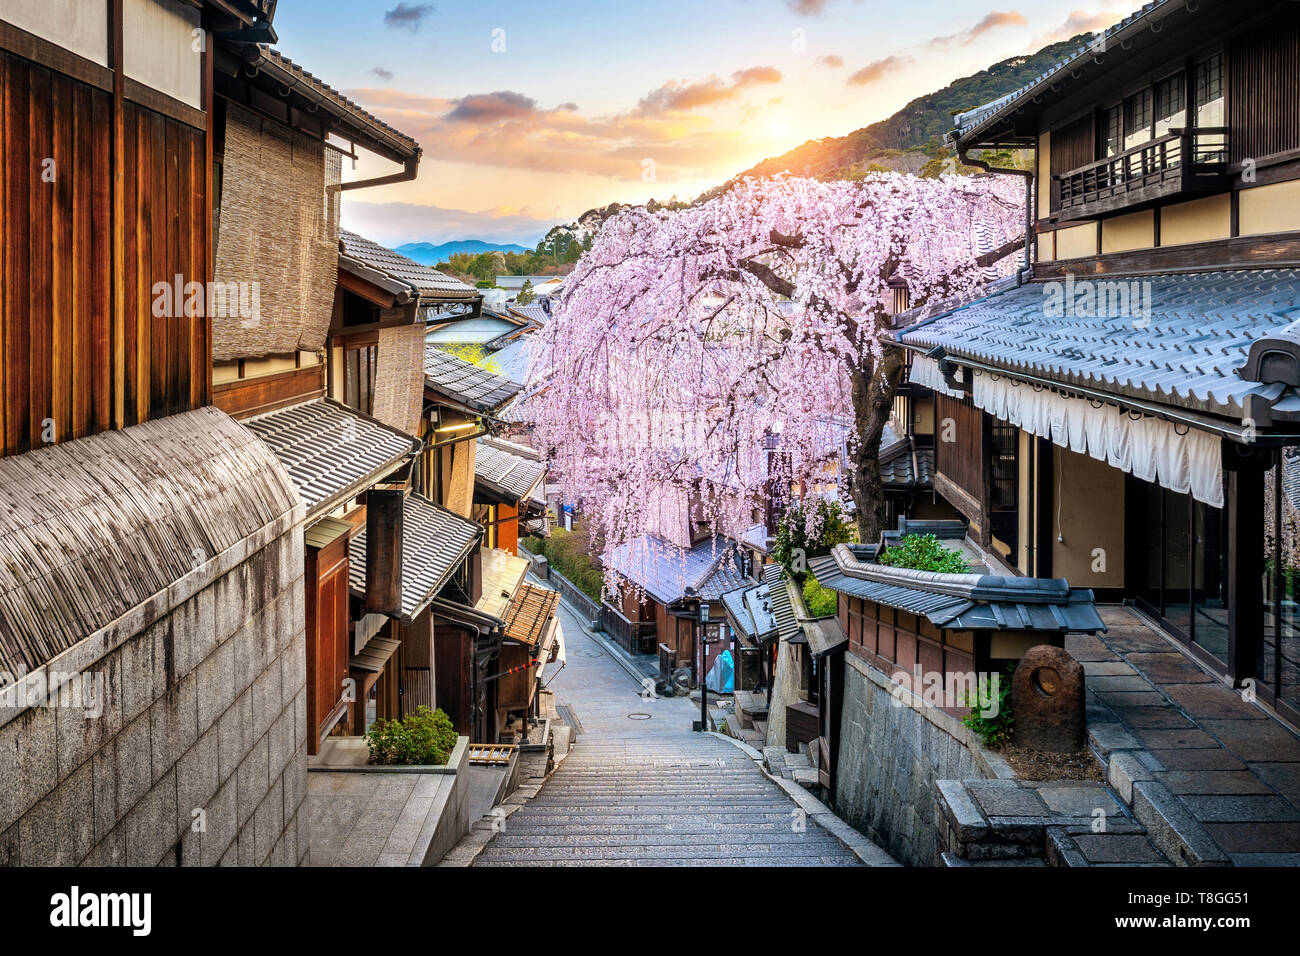 La fioritura dei ciliegi nel periodo primaverile presso lo storico quartiere di Higashiyama, Kyoto in Giappone. Foto Stock